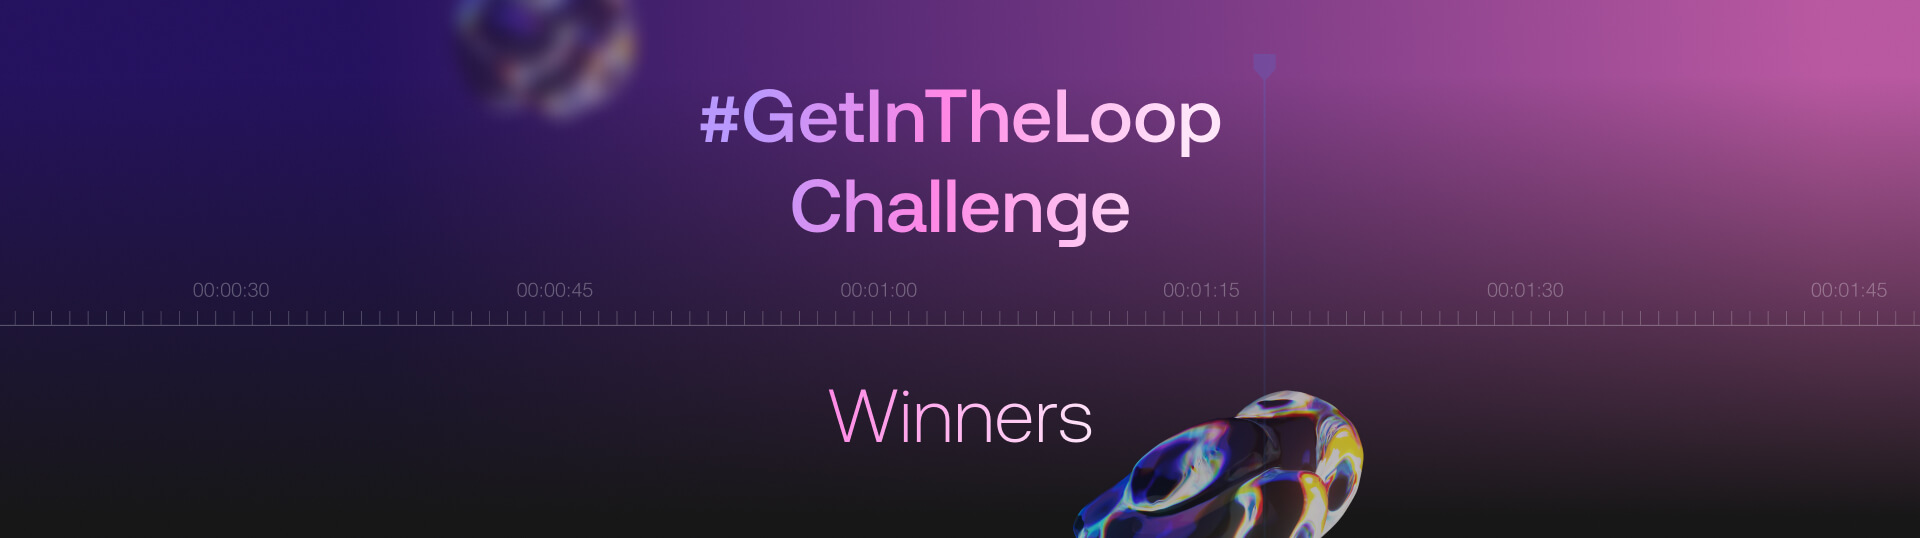 getintheloop challenge winners